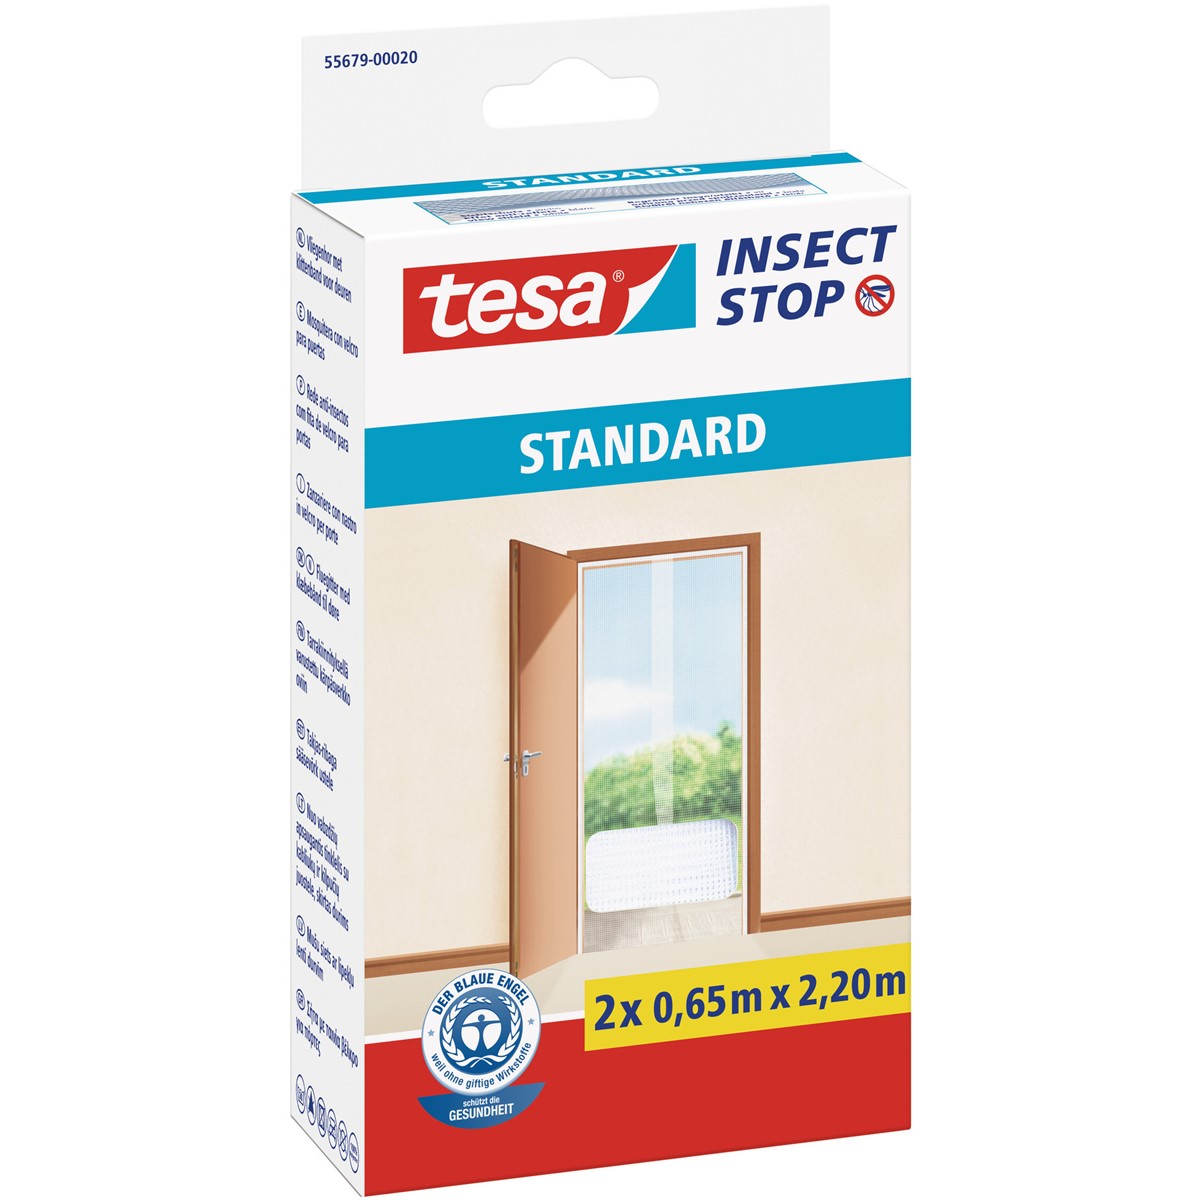 tesa 55679-00020 - Fliegengitter Insect Stop Klett STANDARD für Türen, 2 x  0,65m x 2,20m, weiß